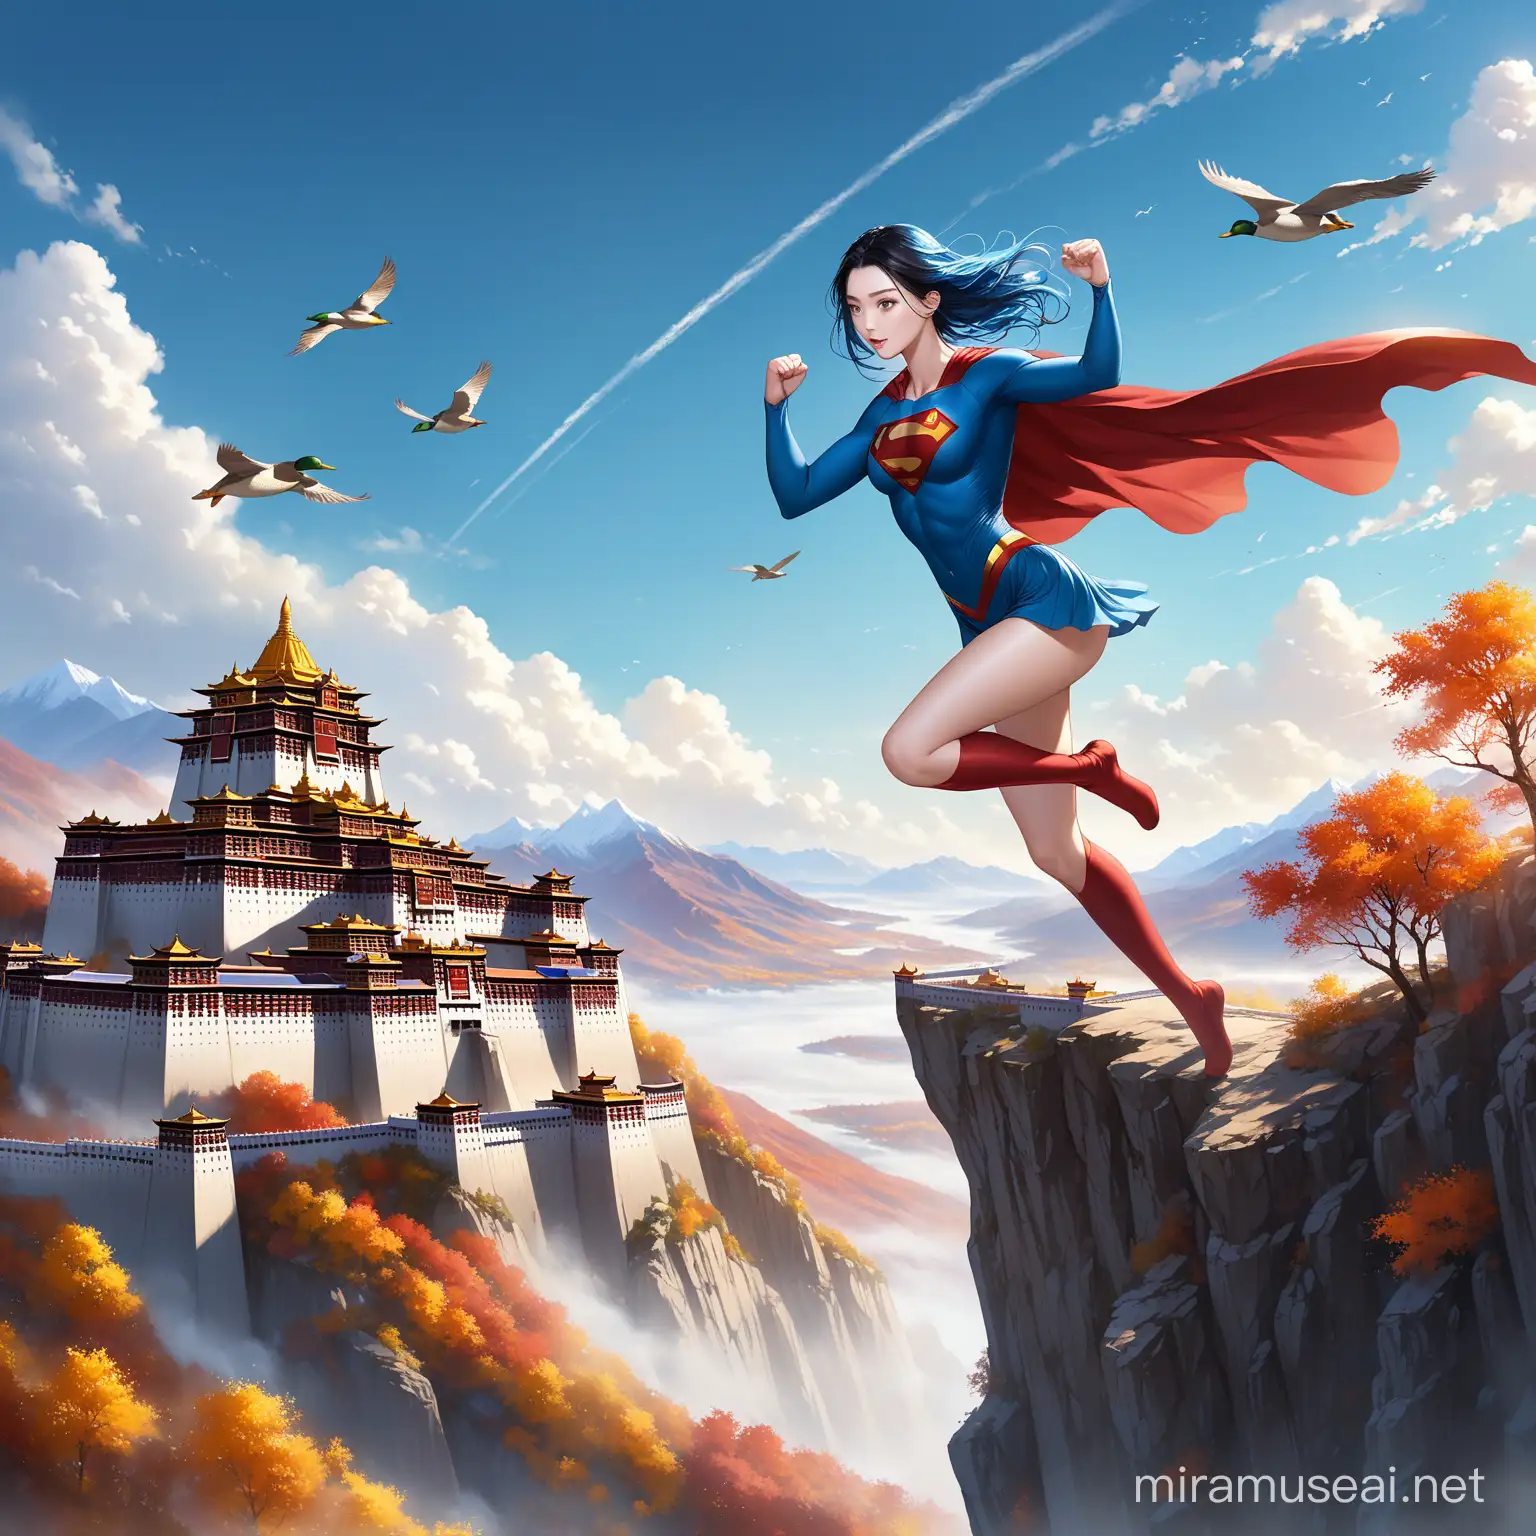 Superwoman Fan Bingbing Soars Over Misty Tibetan Mountains